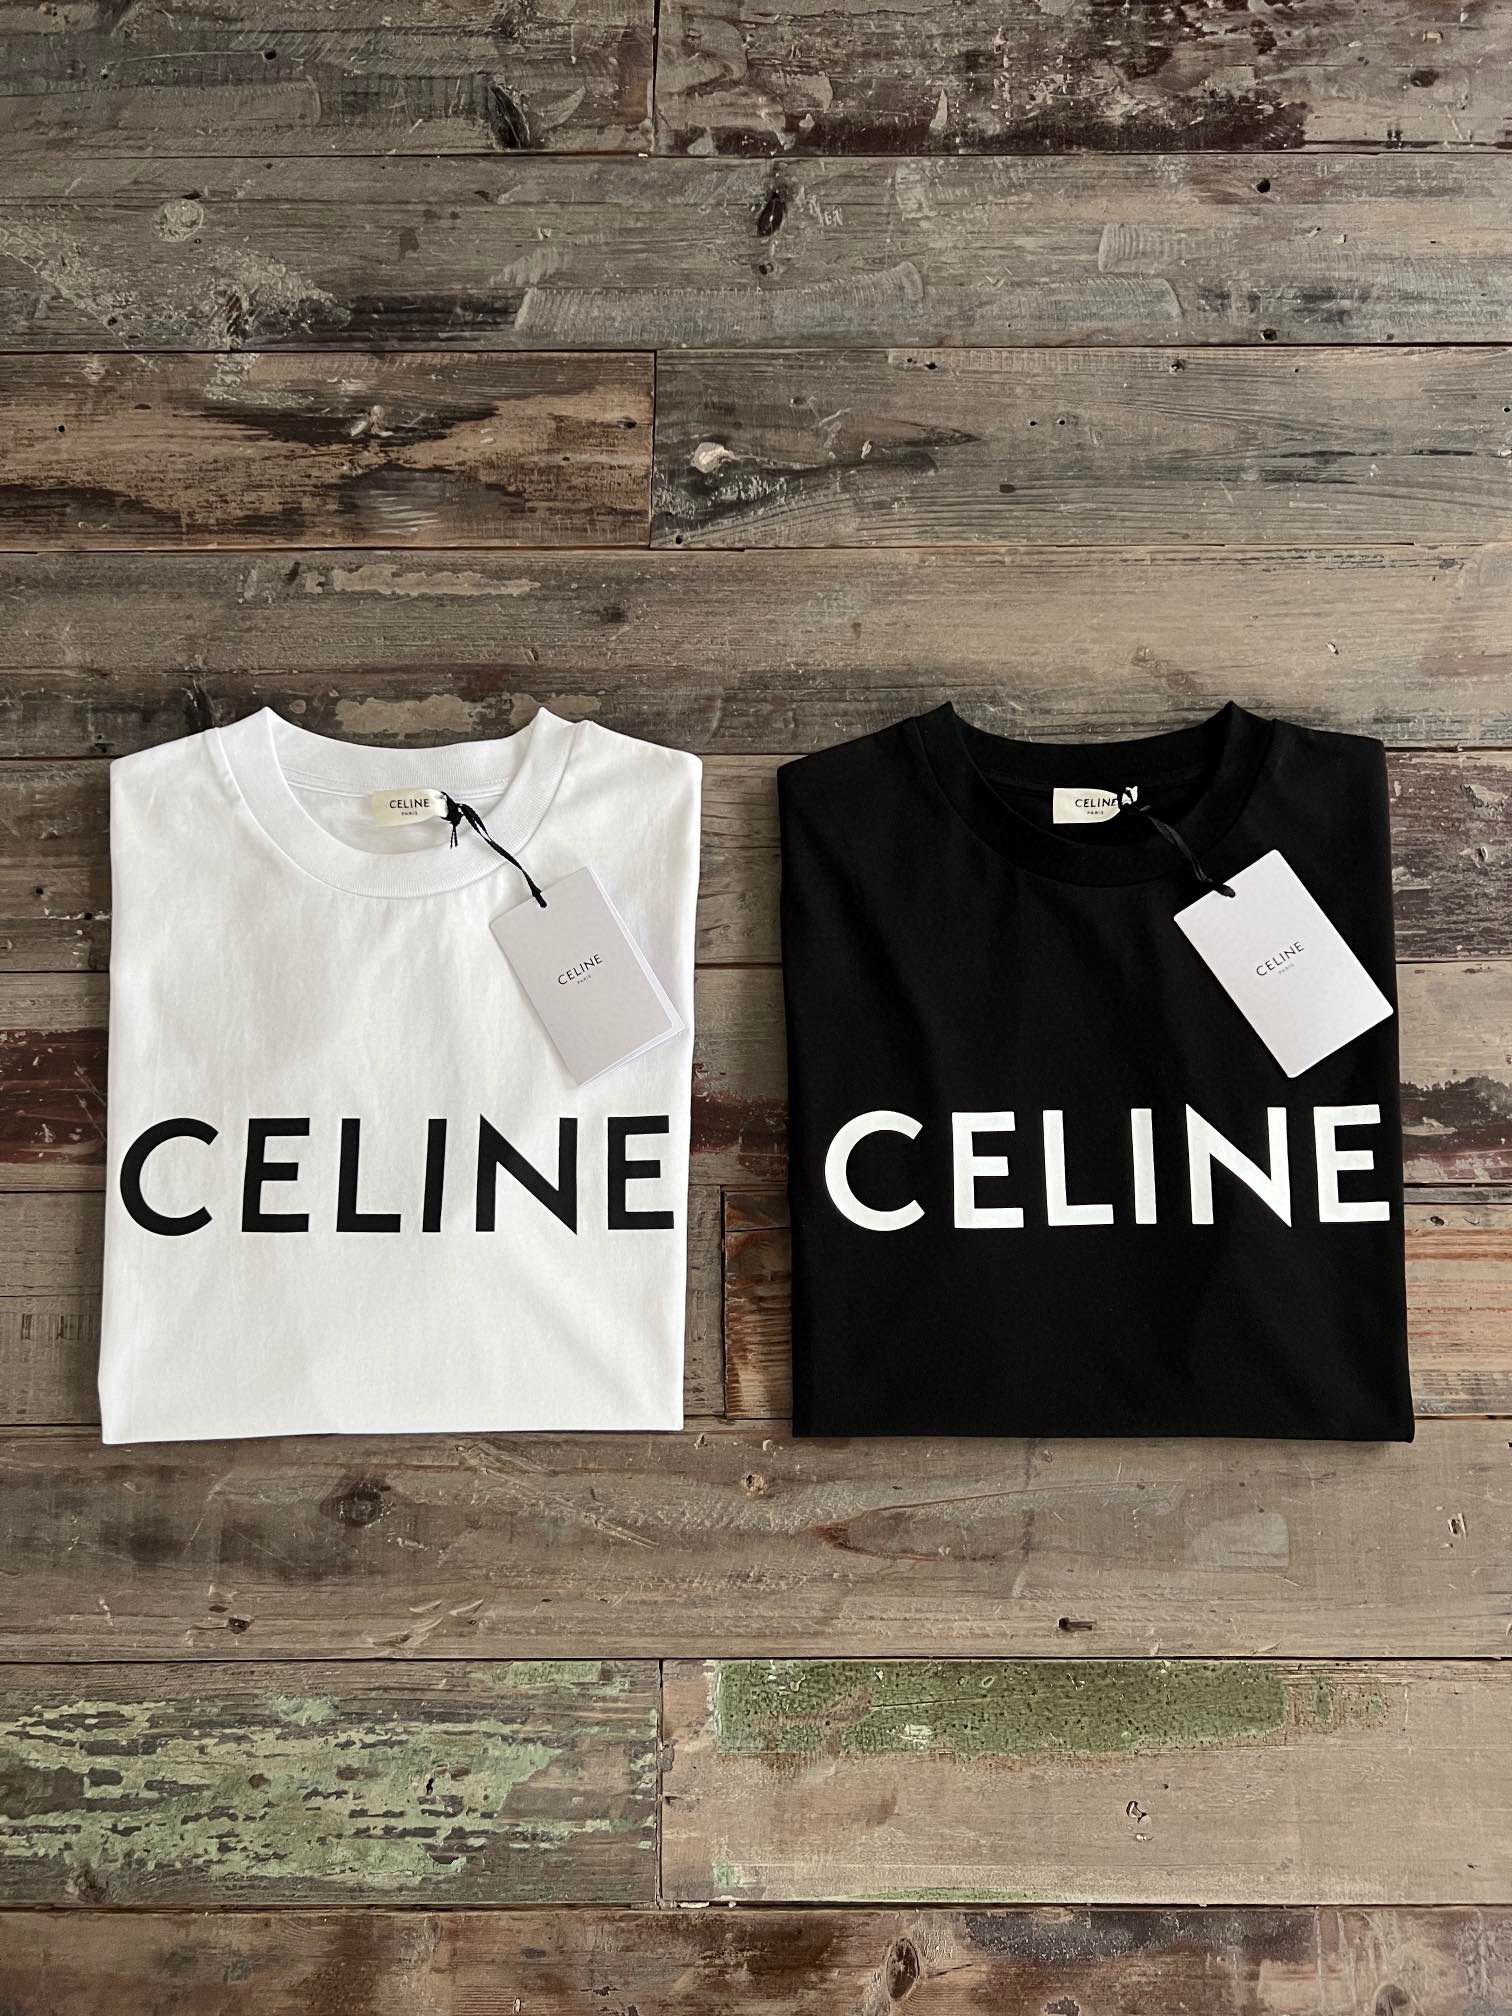 法国Celine用奢侈表达时尚界对文化与运动的关心，代表了一种新的生活方式，一直是优秀品质和精致时尚的代名词。\n         24SS新款短袖T恤，男女均可的宽松剪裁，无性别定义，设计风格简约基础，号称招牌式的存在，既是经典的范例，又是奢侈的标志，胸口CELINE字母干净清爽，与衣服颜色相撞的黑白字母突出了主题，无论是哪个配色上身，辨识度和腔调都表现力十足，这种行走的标签一定会在街头给行人的目光打上深深的烙印。zydlb克精梳棉定制，全品相！\n\n     黑色   白色 S M L X